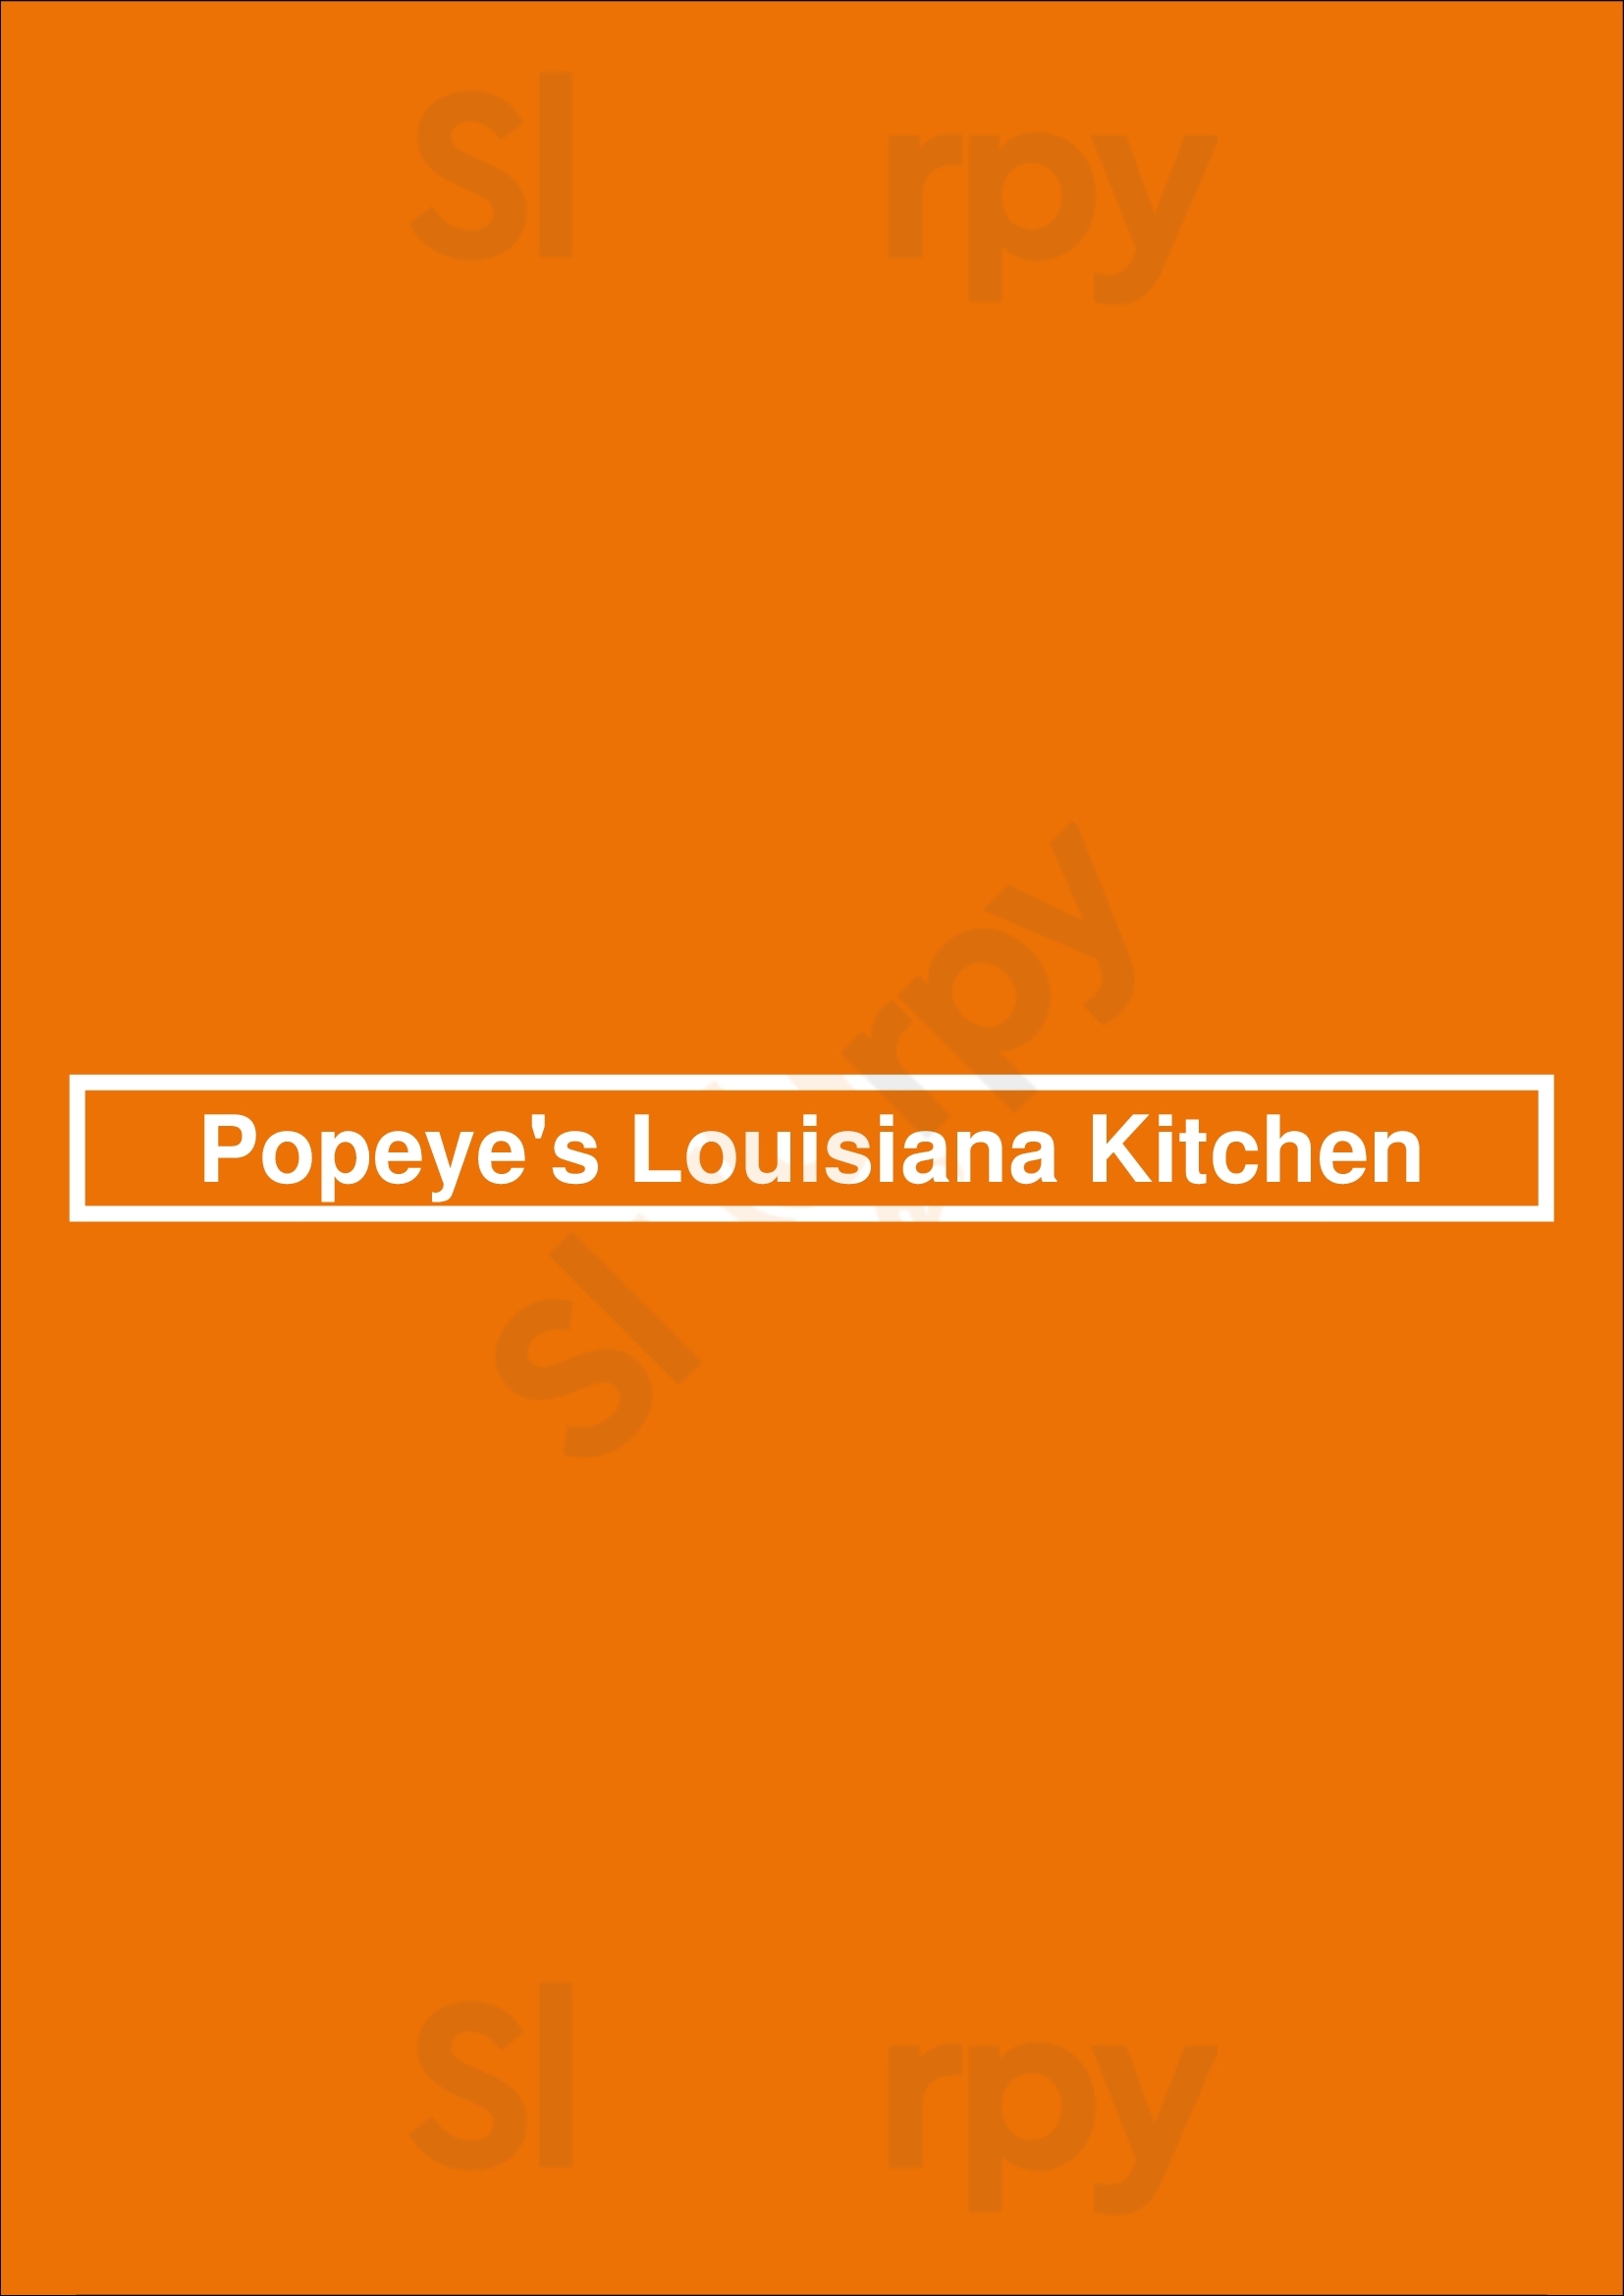 Popeye's Louisiana Kitchen Edmonton Menu - 1